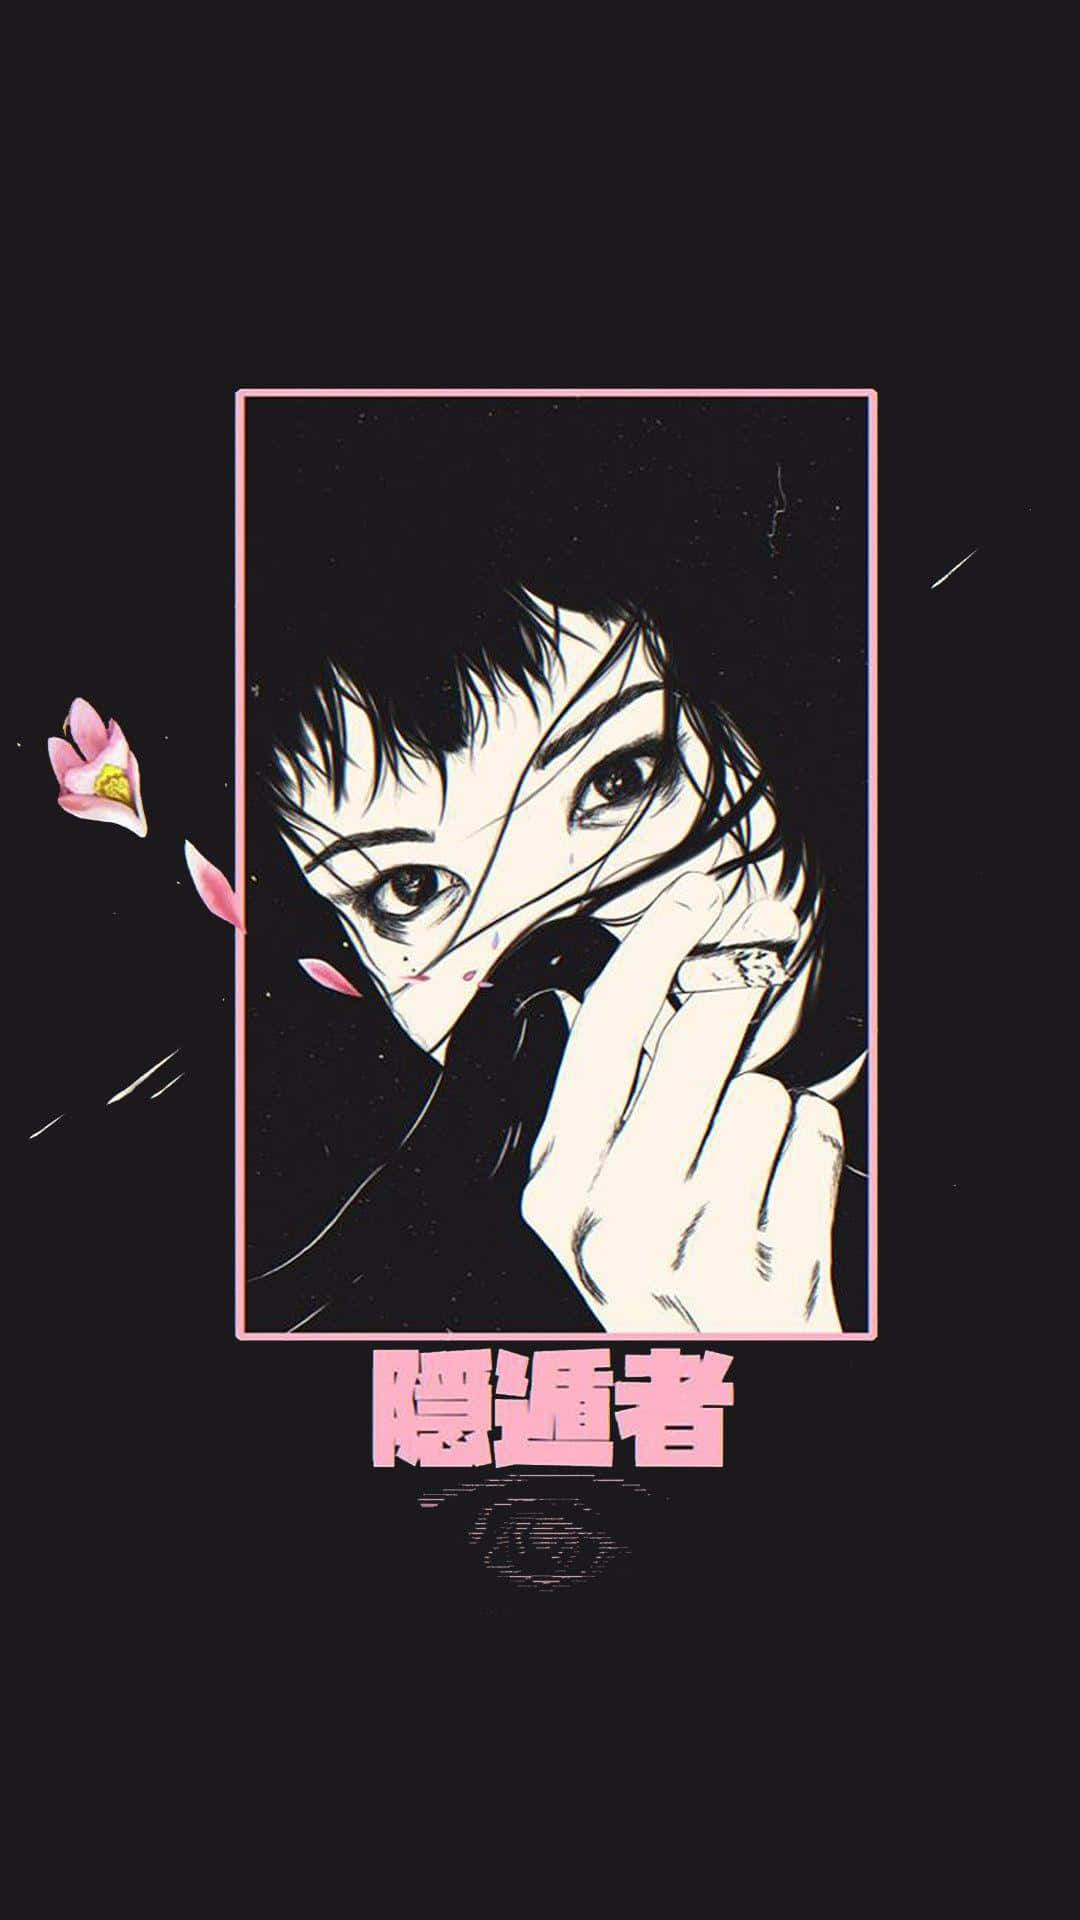 Dark Aesthetic Anime Grunge Girl Wallpaper